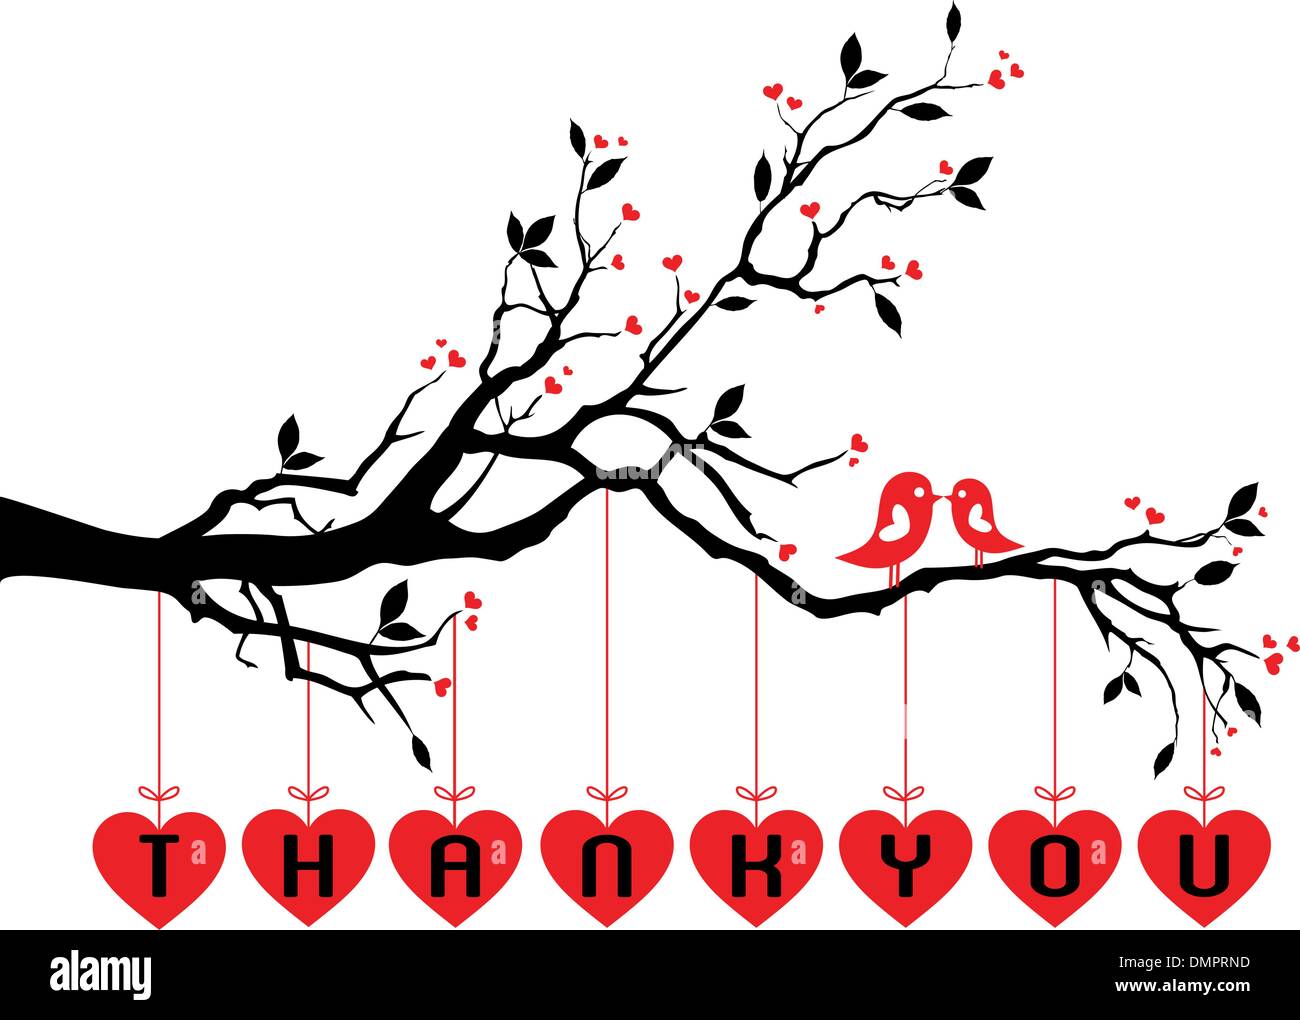 Vögel auf Baum mit roten Herzen, Vektor Stock Vektor